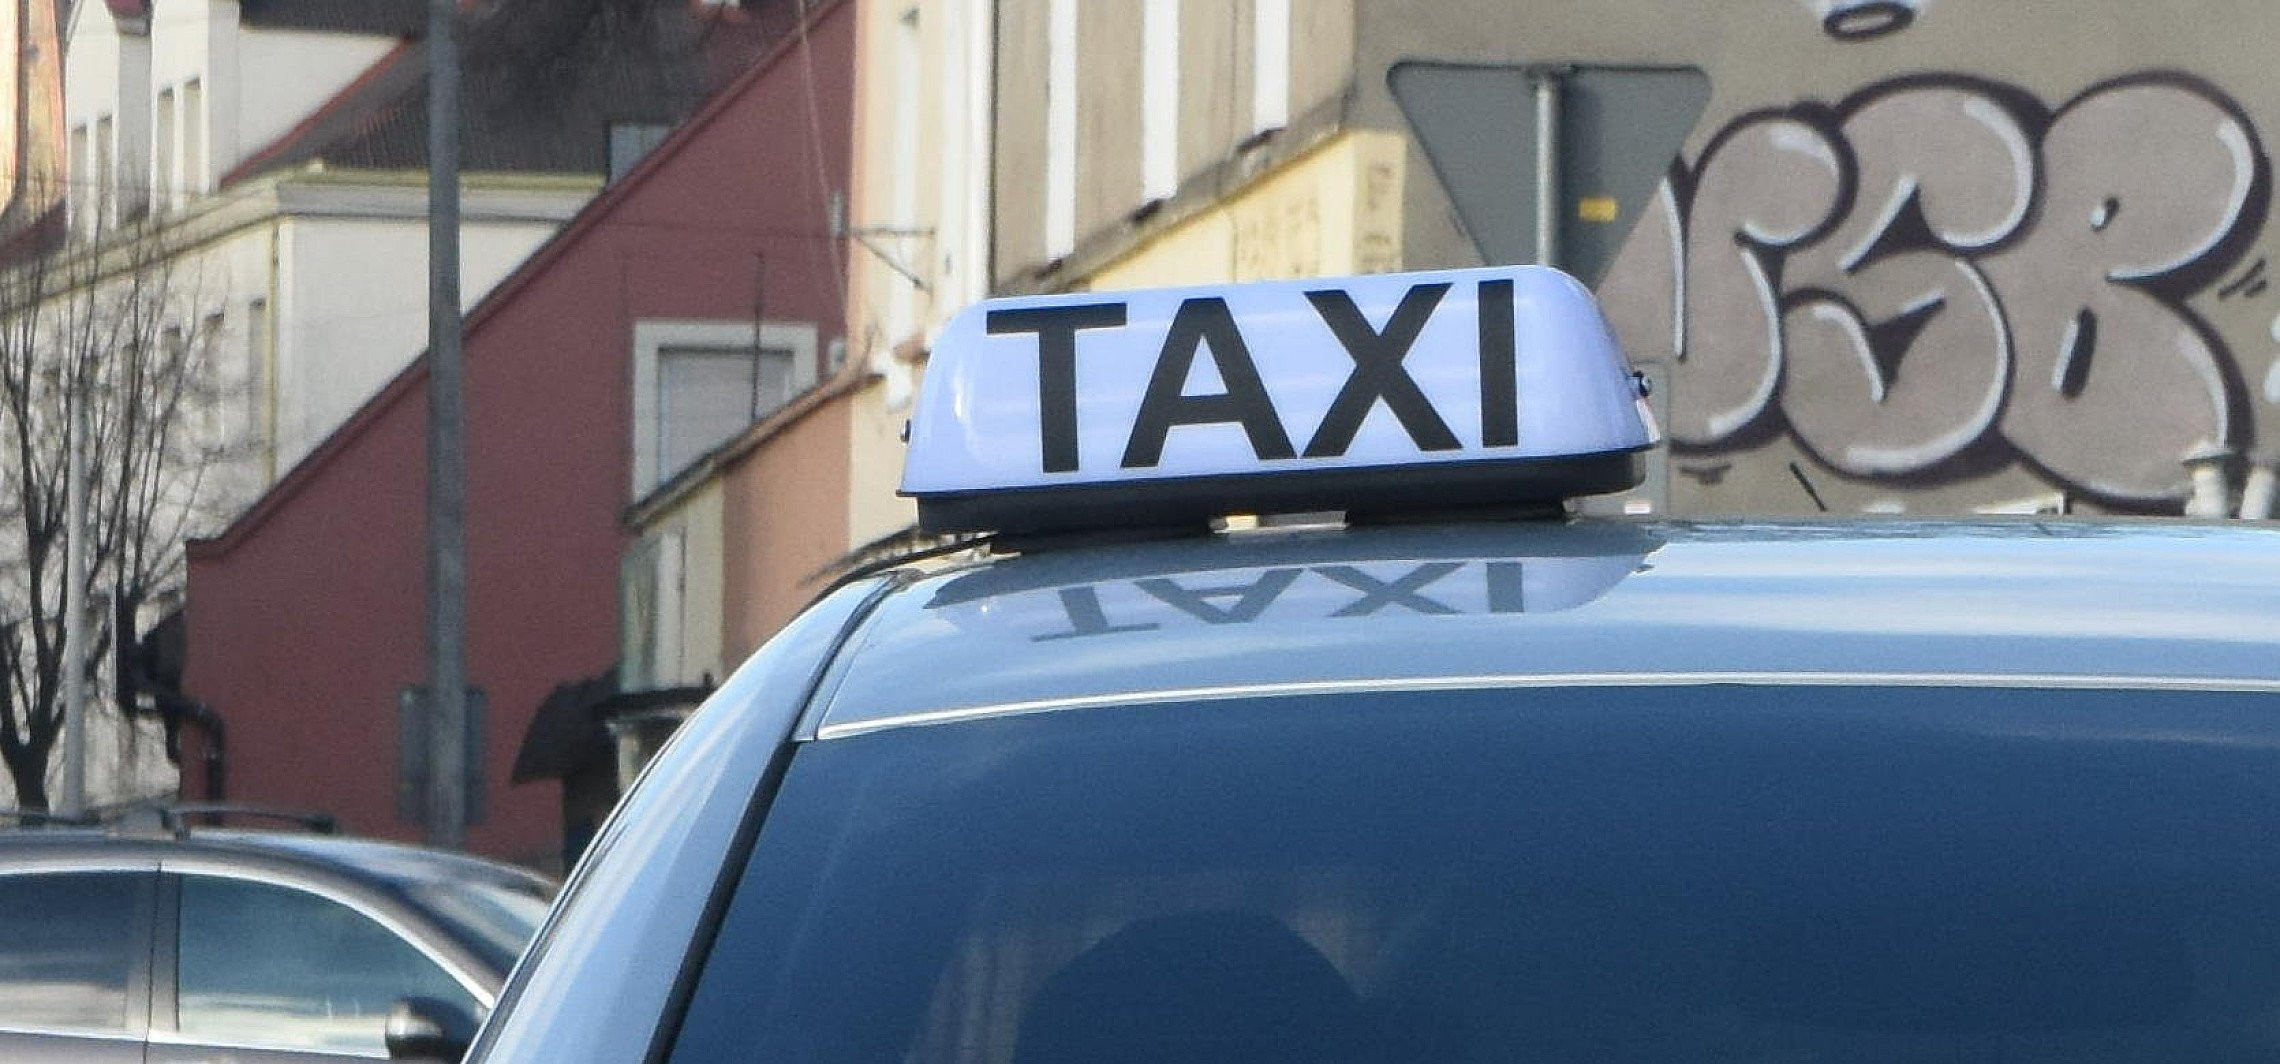 Inowrocław - Troskliwy taksówkarz zaopiekował się pasażerką